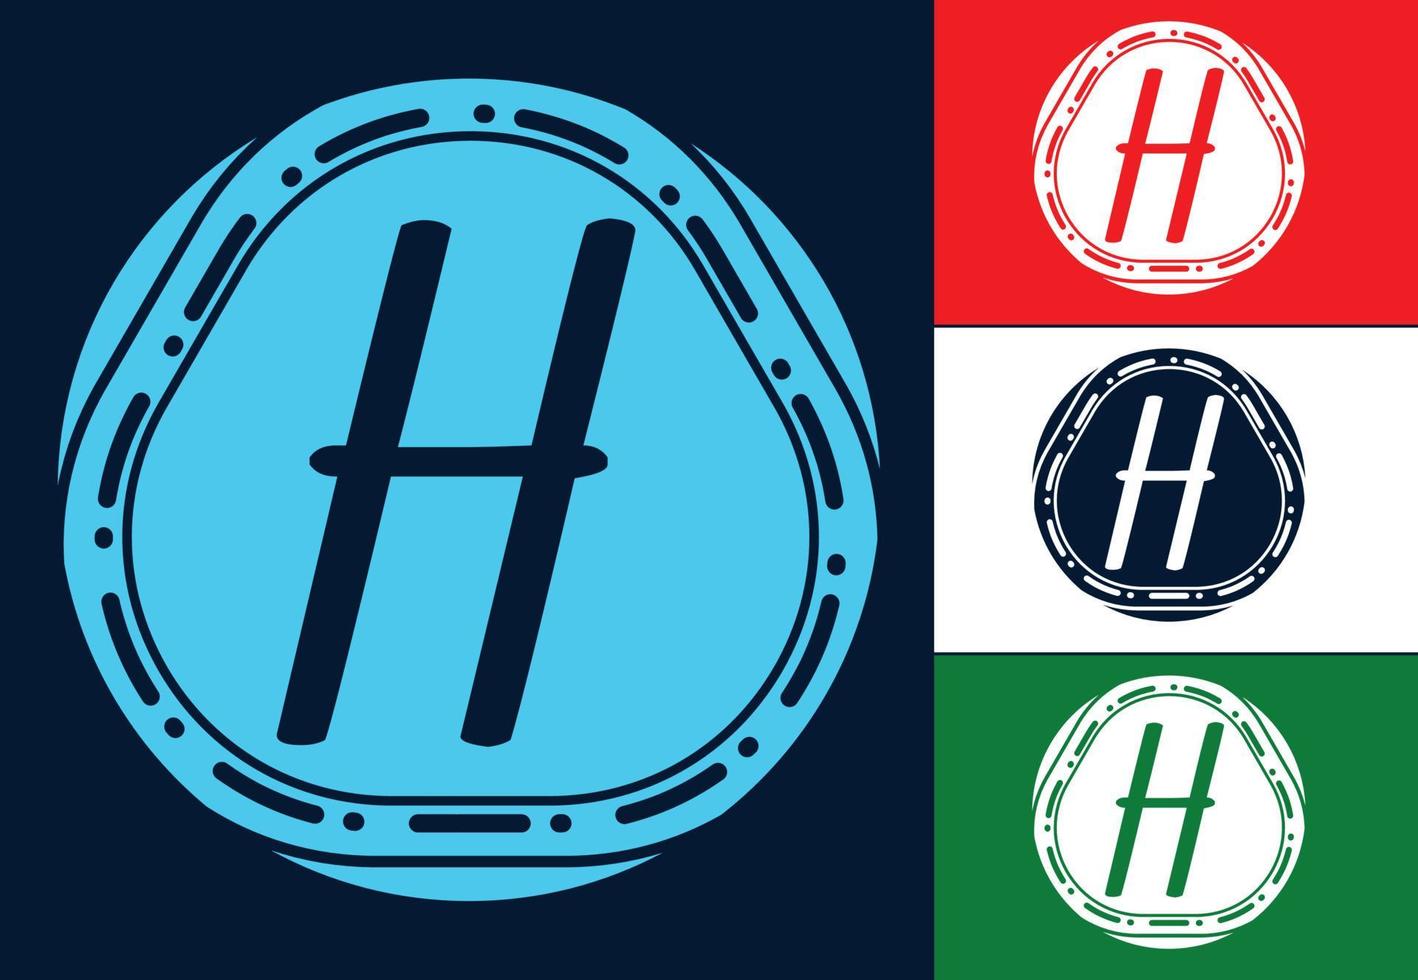 modèle de conception de logo et icône de lettre h vecteur